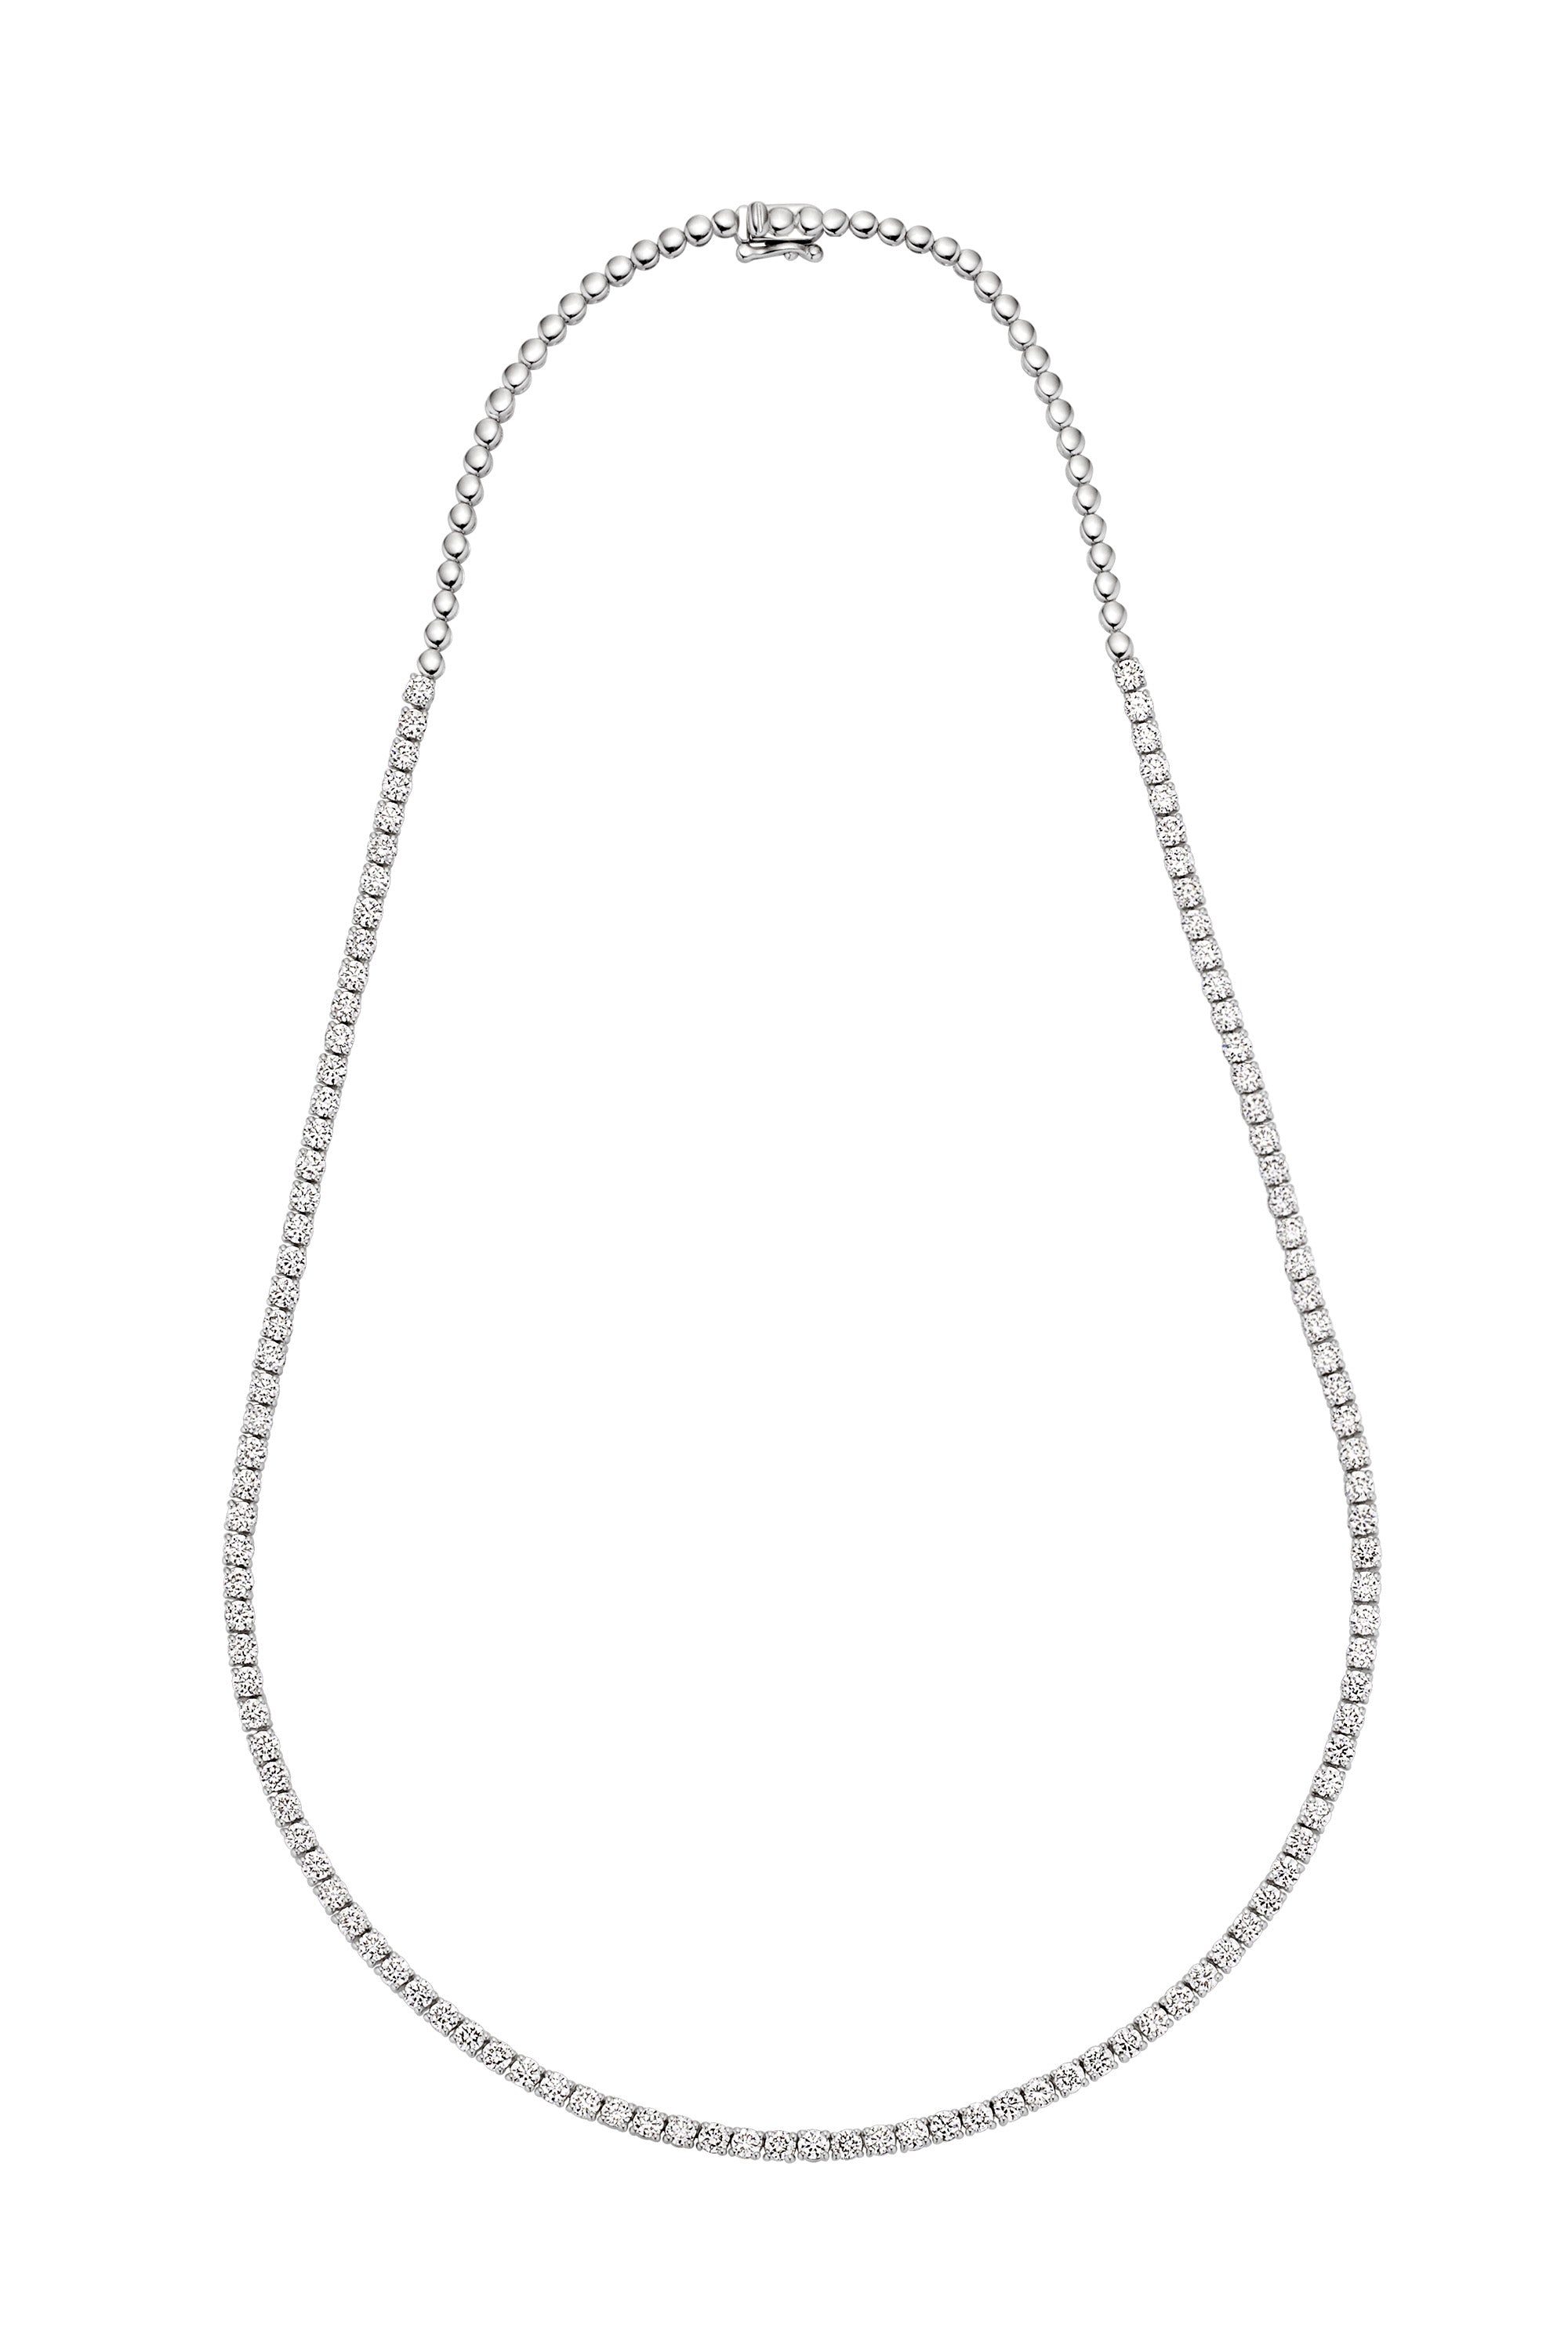 3/4 Diamond Tennis Necklace